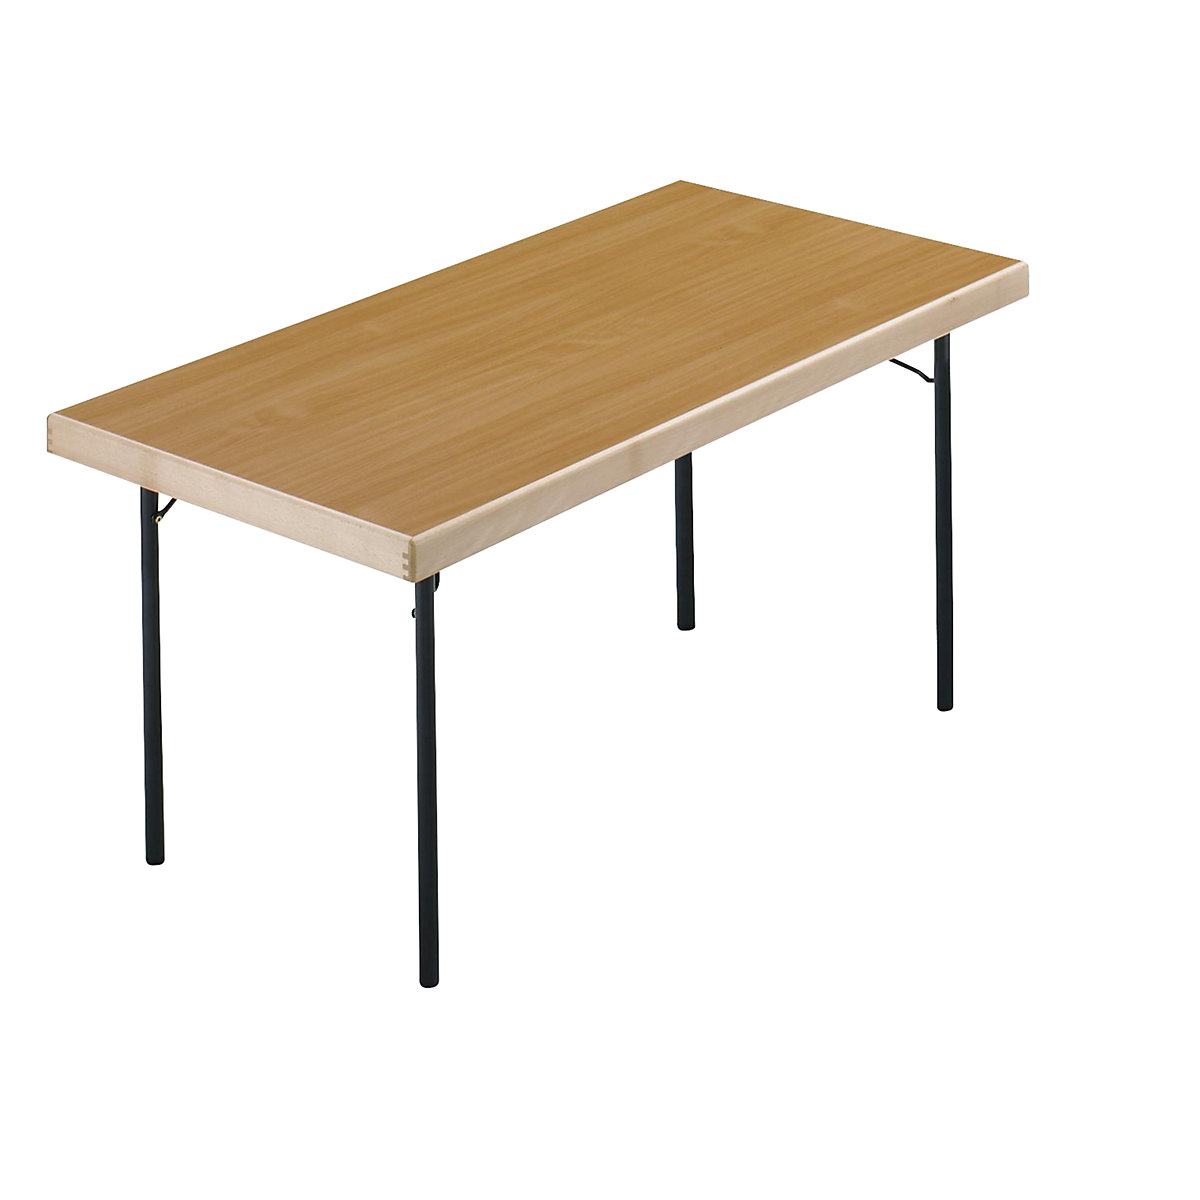 Sklápací stôl, podstavec so 4 nohami, 1500 x 800 mm, podstavec antracitová, doska vzor buk-6